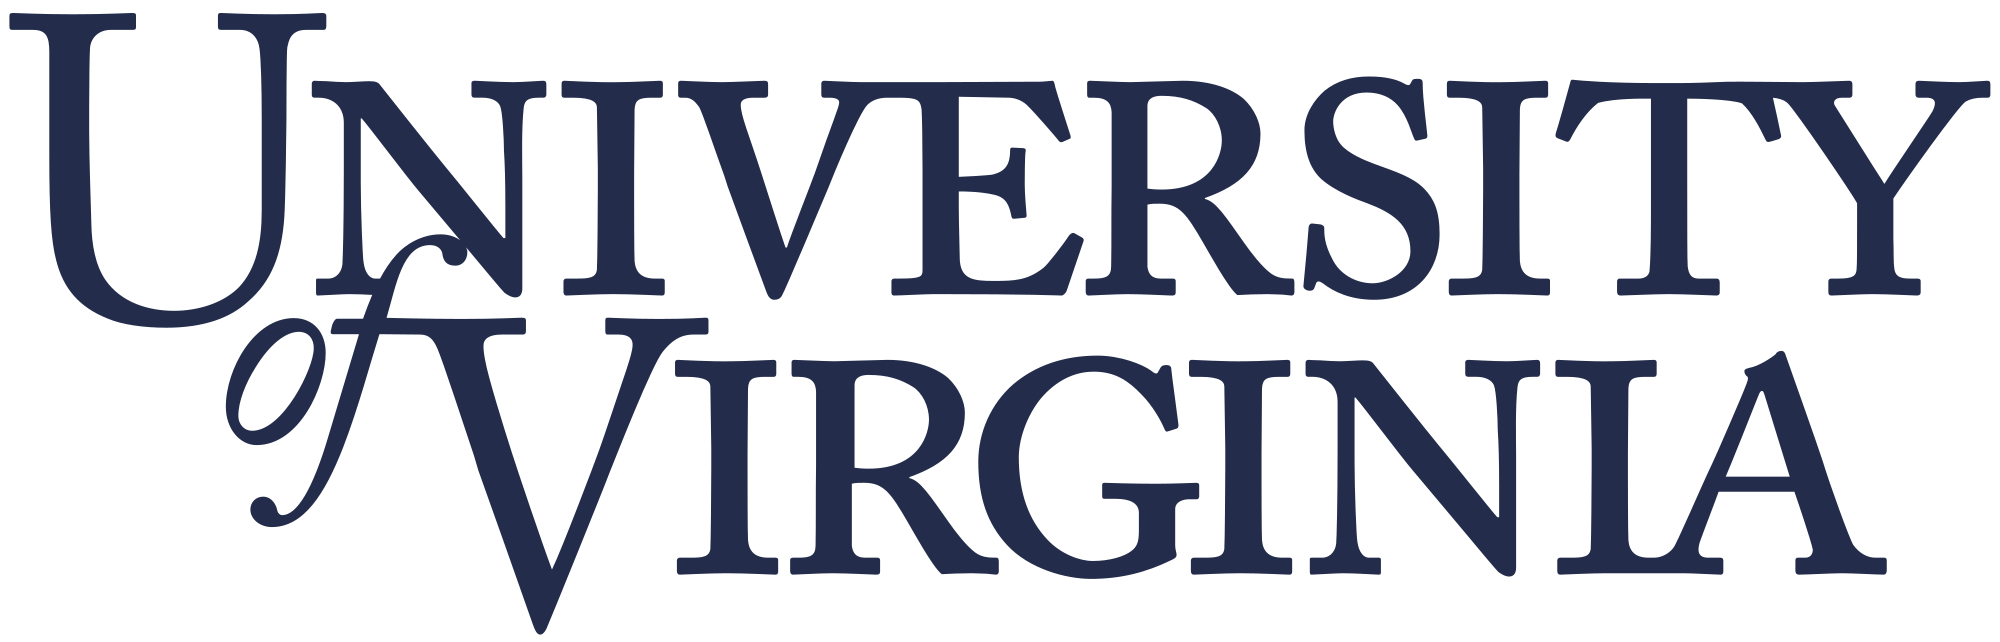 Virginia Logo - University of Virginia logo.svg